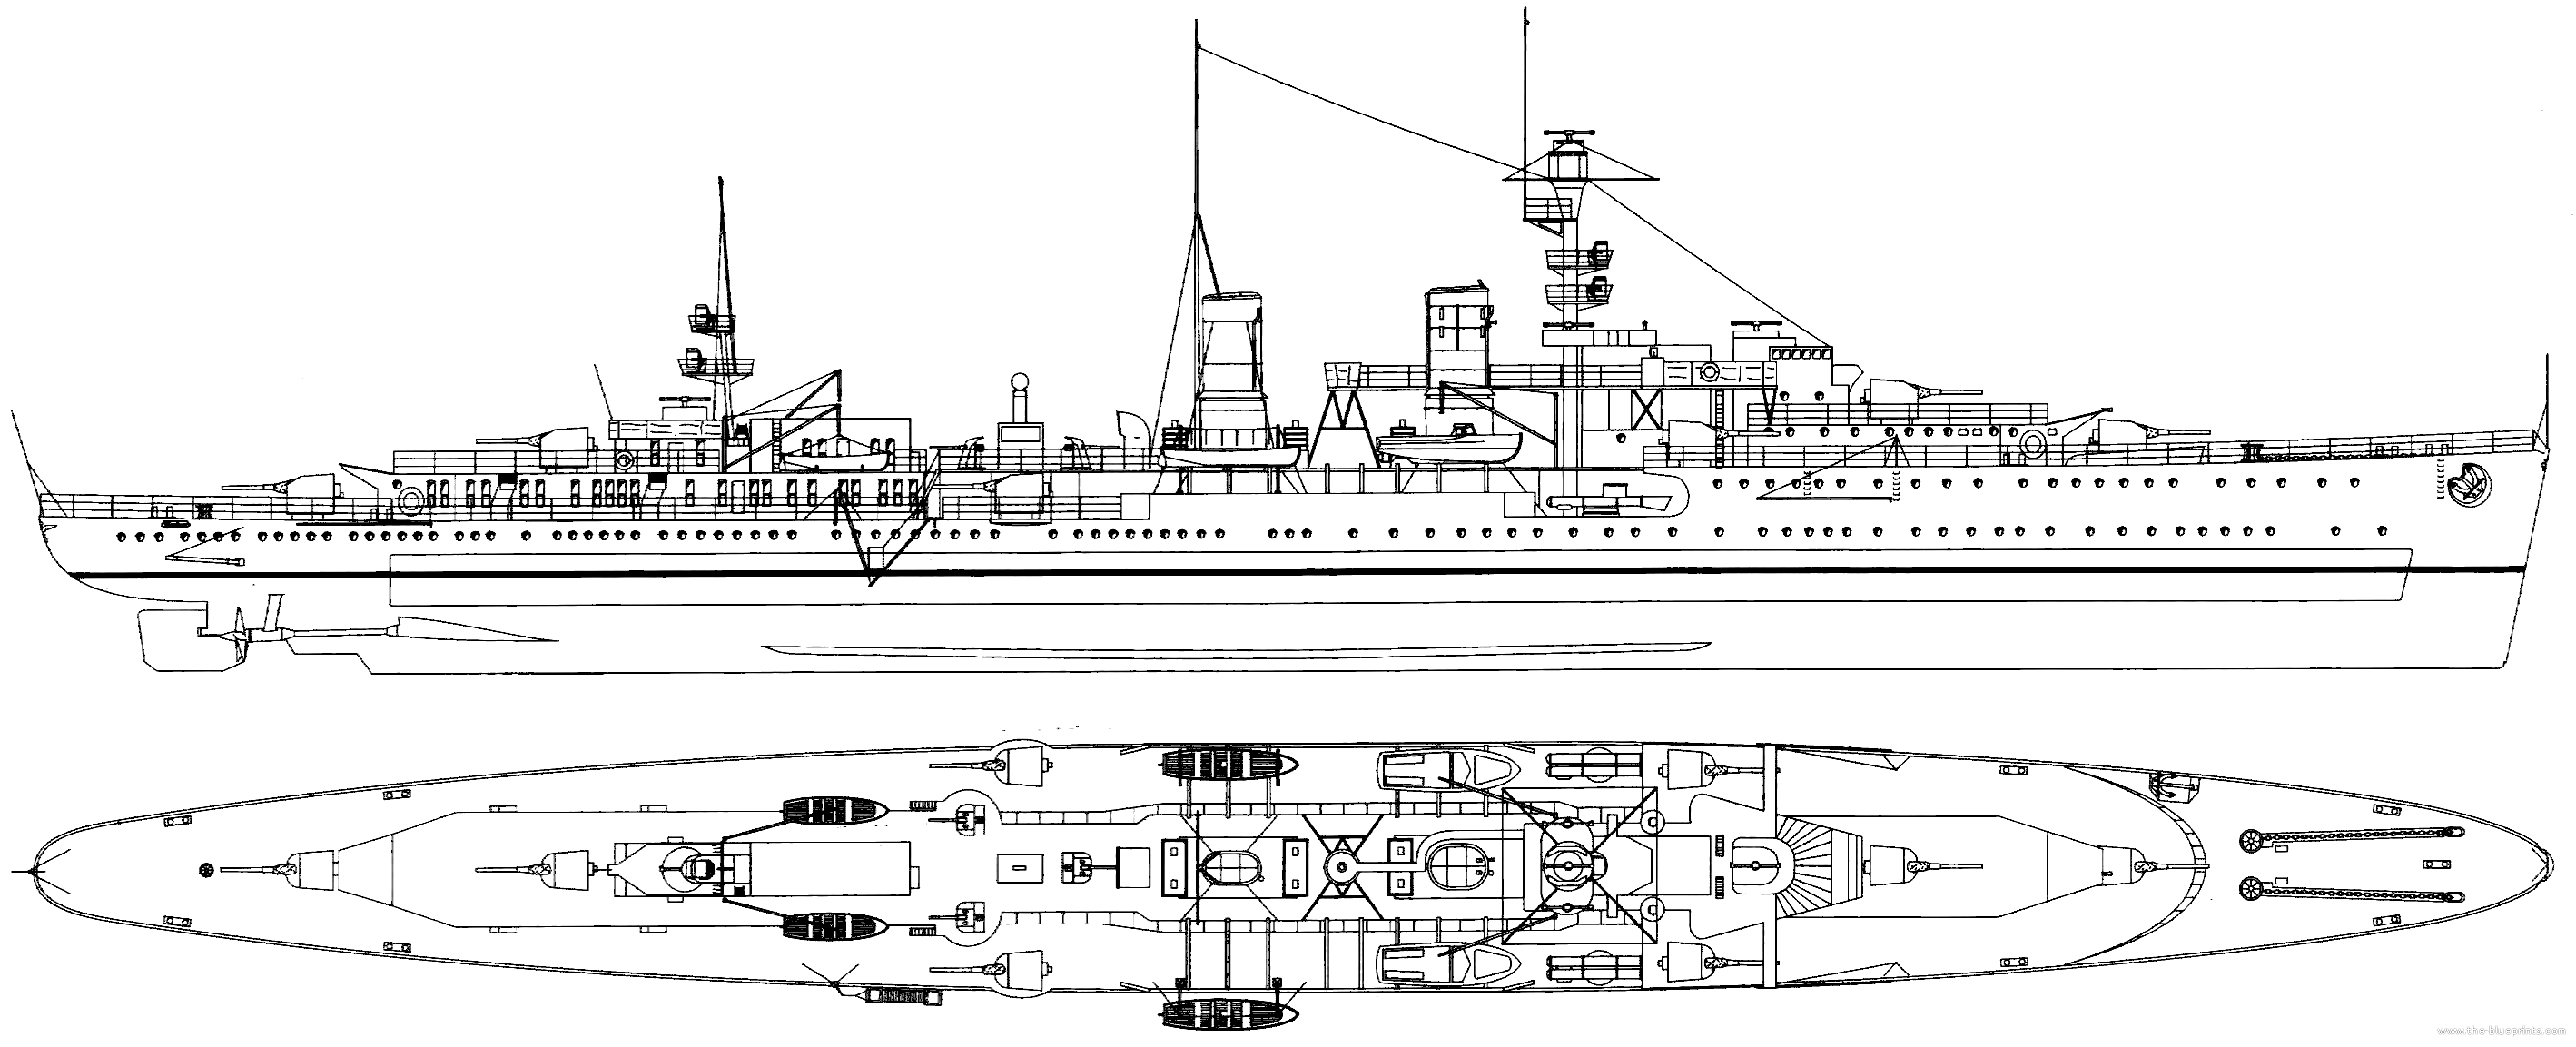 Emden in 1938 - Blueprint